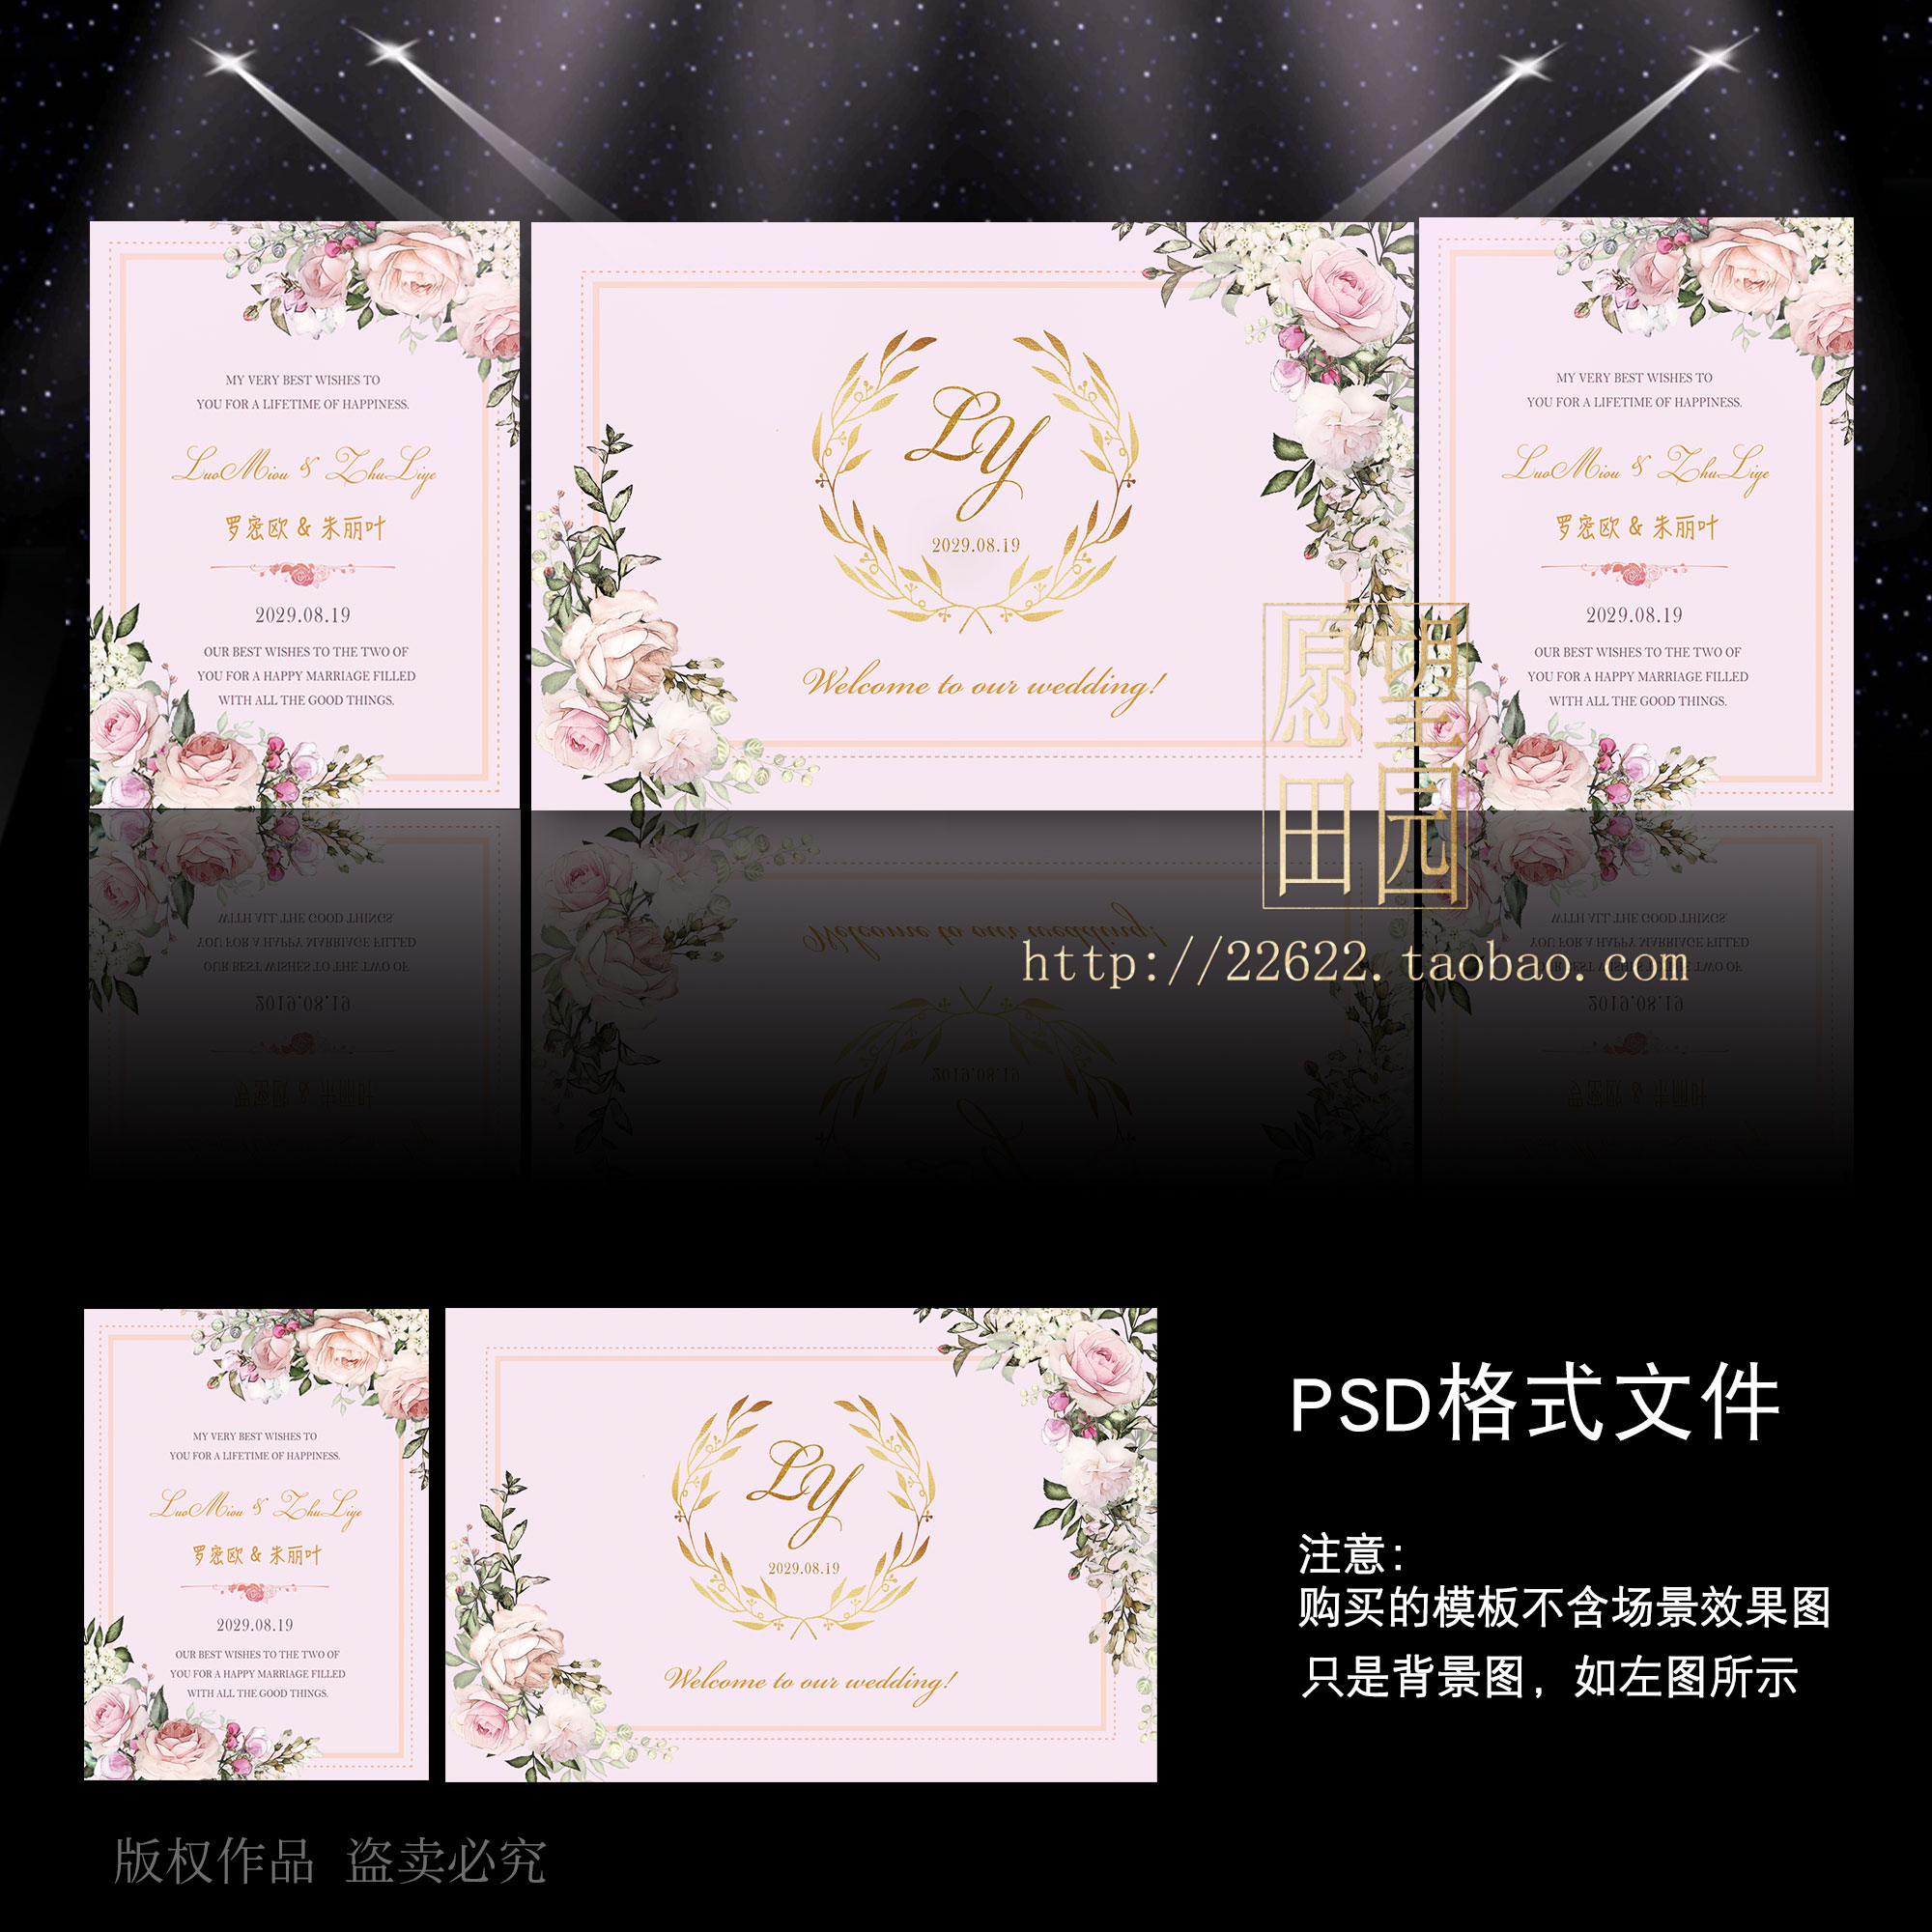 Y69粉色水彩风格鲜花朵婚礼背景设计图婚庆布置效果图模板PSD素材